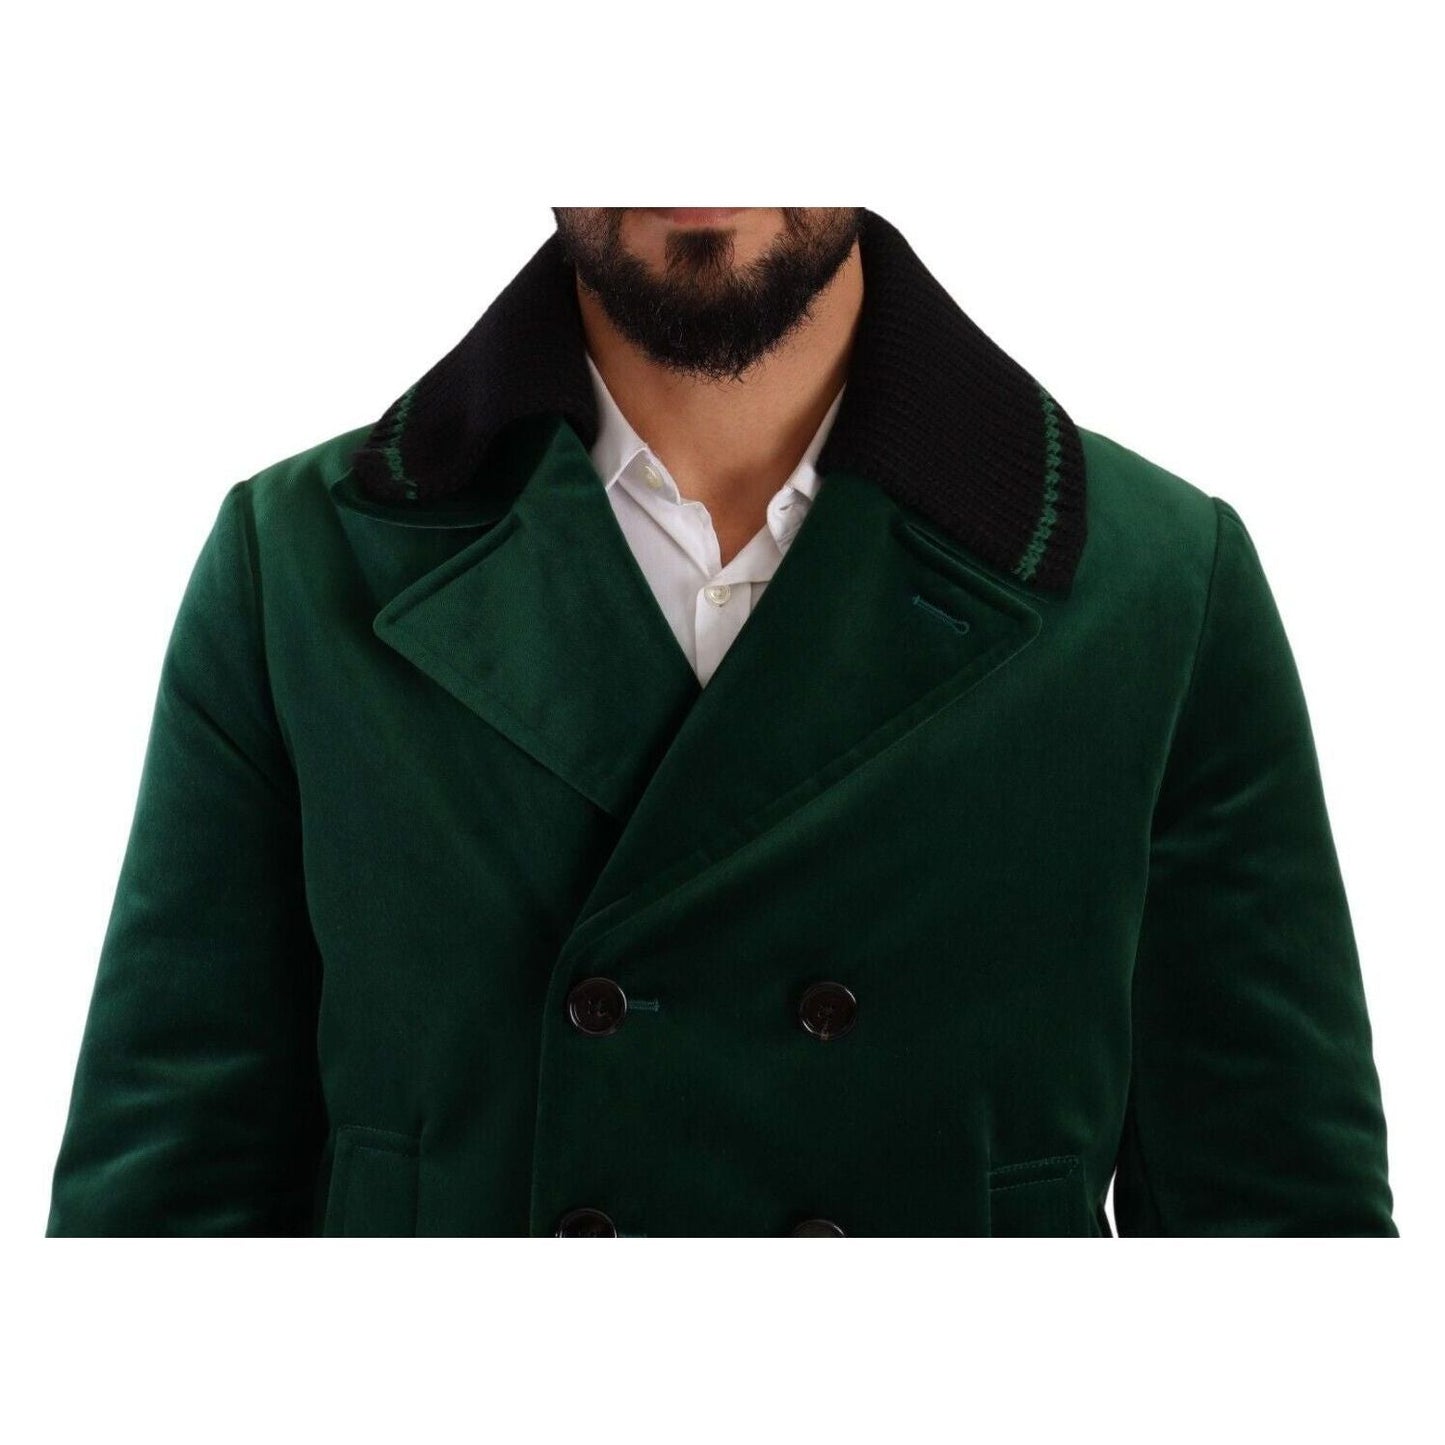 Dolce & Gabbana Elegant Velvet Double Breasted Overcoat green-velvet-cotton-double-breasted-jacket s-l1600-3-206-6c9a446b-643.jpg